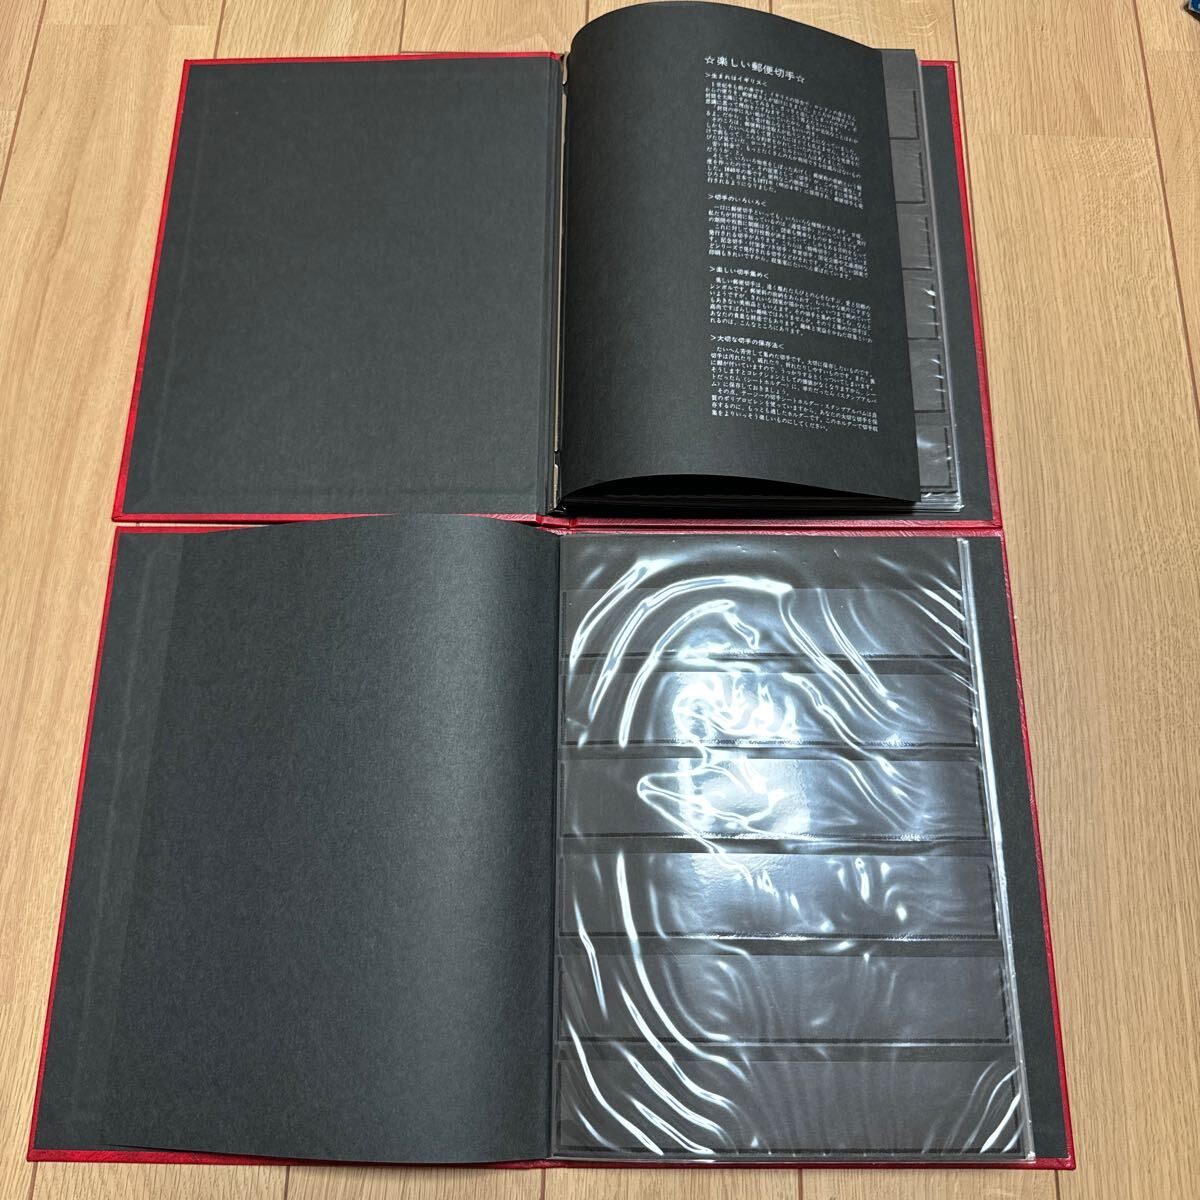  stock книжка Stamp Album BTypete-ji-SB-30 штамп альбом красный 2 шт. суммировать с футляром длина примерный 26.8cm ширина примерный 20cm картон 8 листов 16 страница 6 уровень 